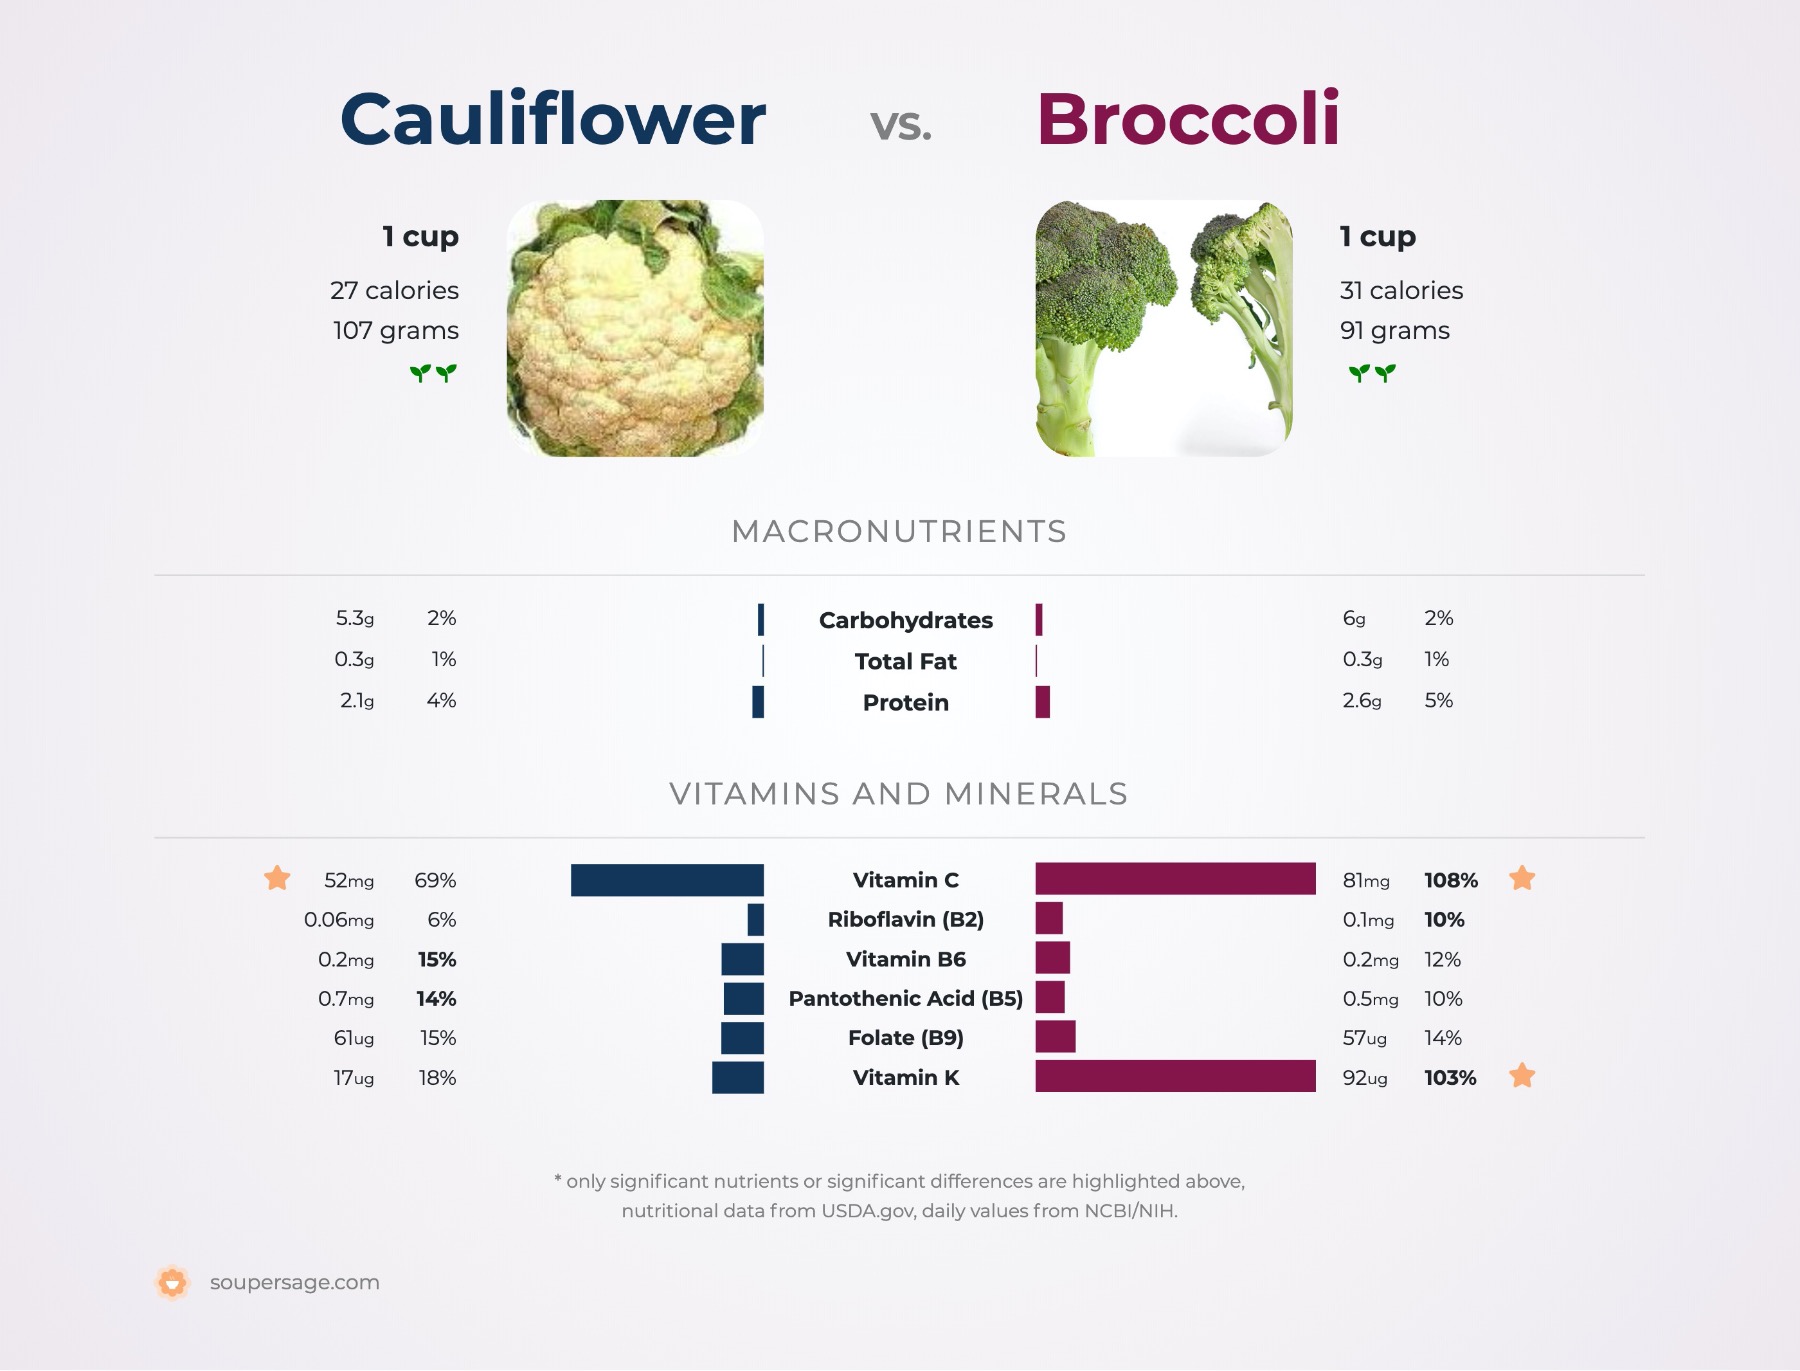 nutrition comparison of broccoli vs. cauliflower